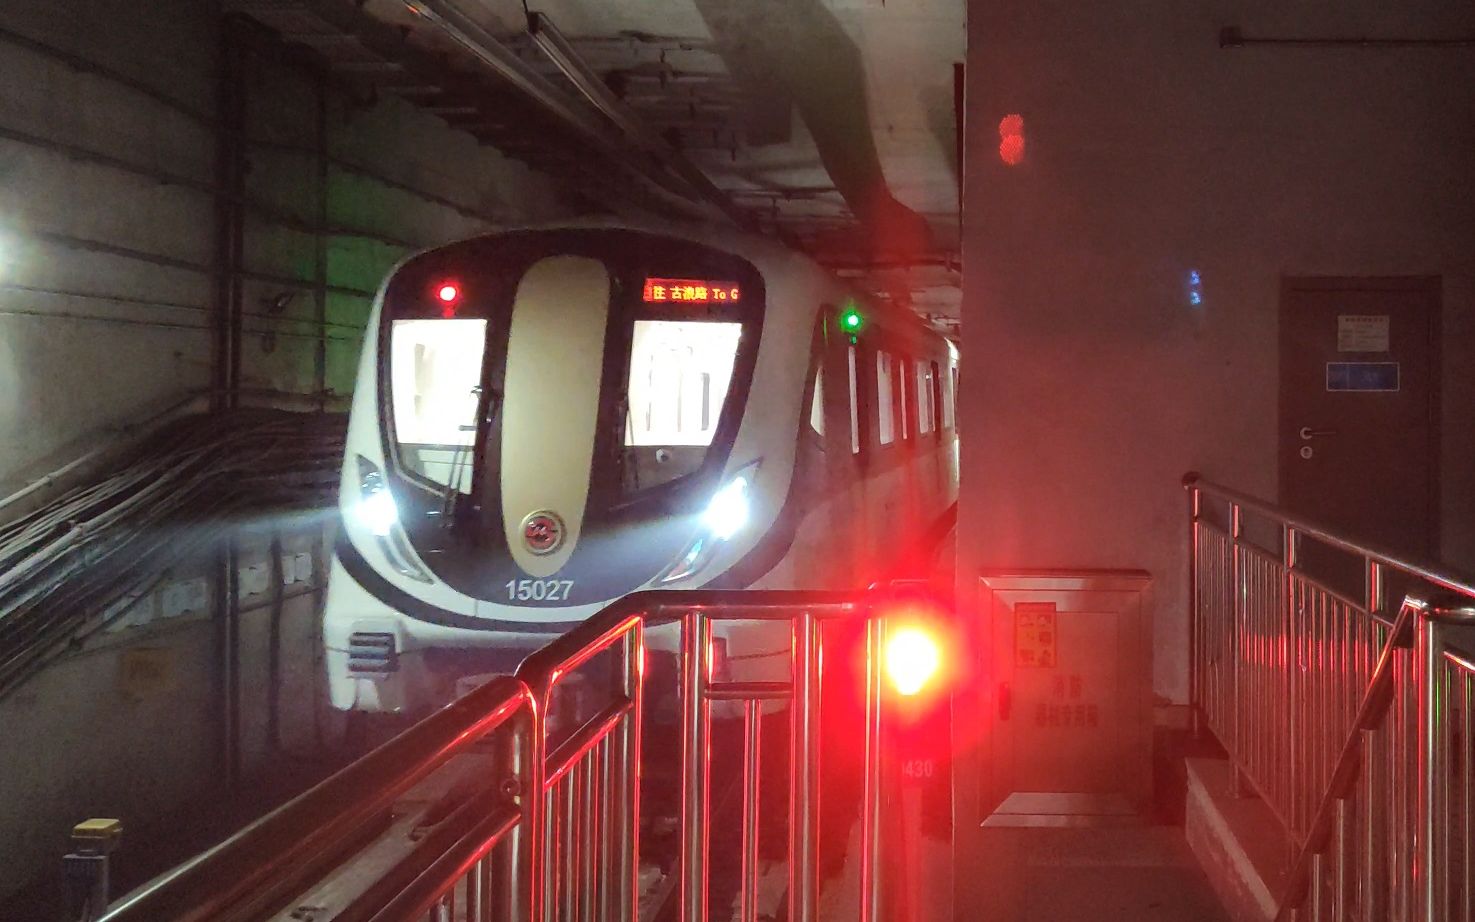 上海地铁15号线15027双柏路折返进站